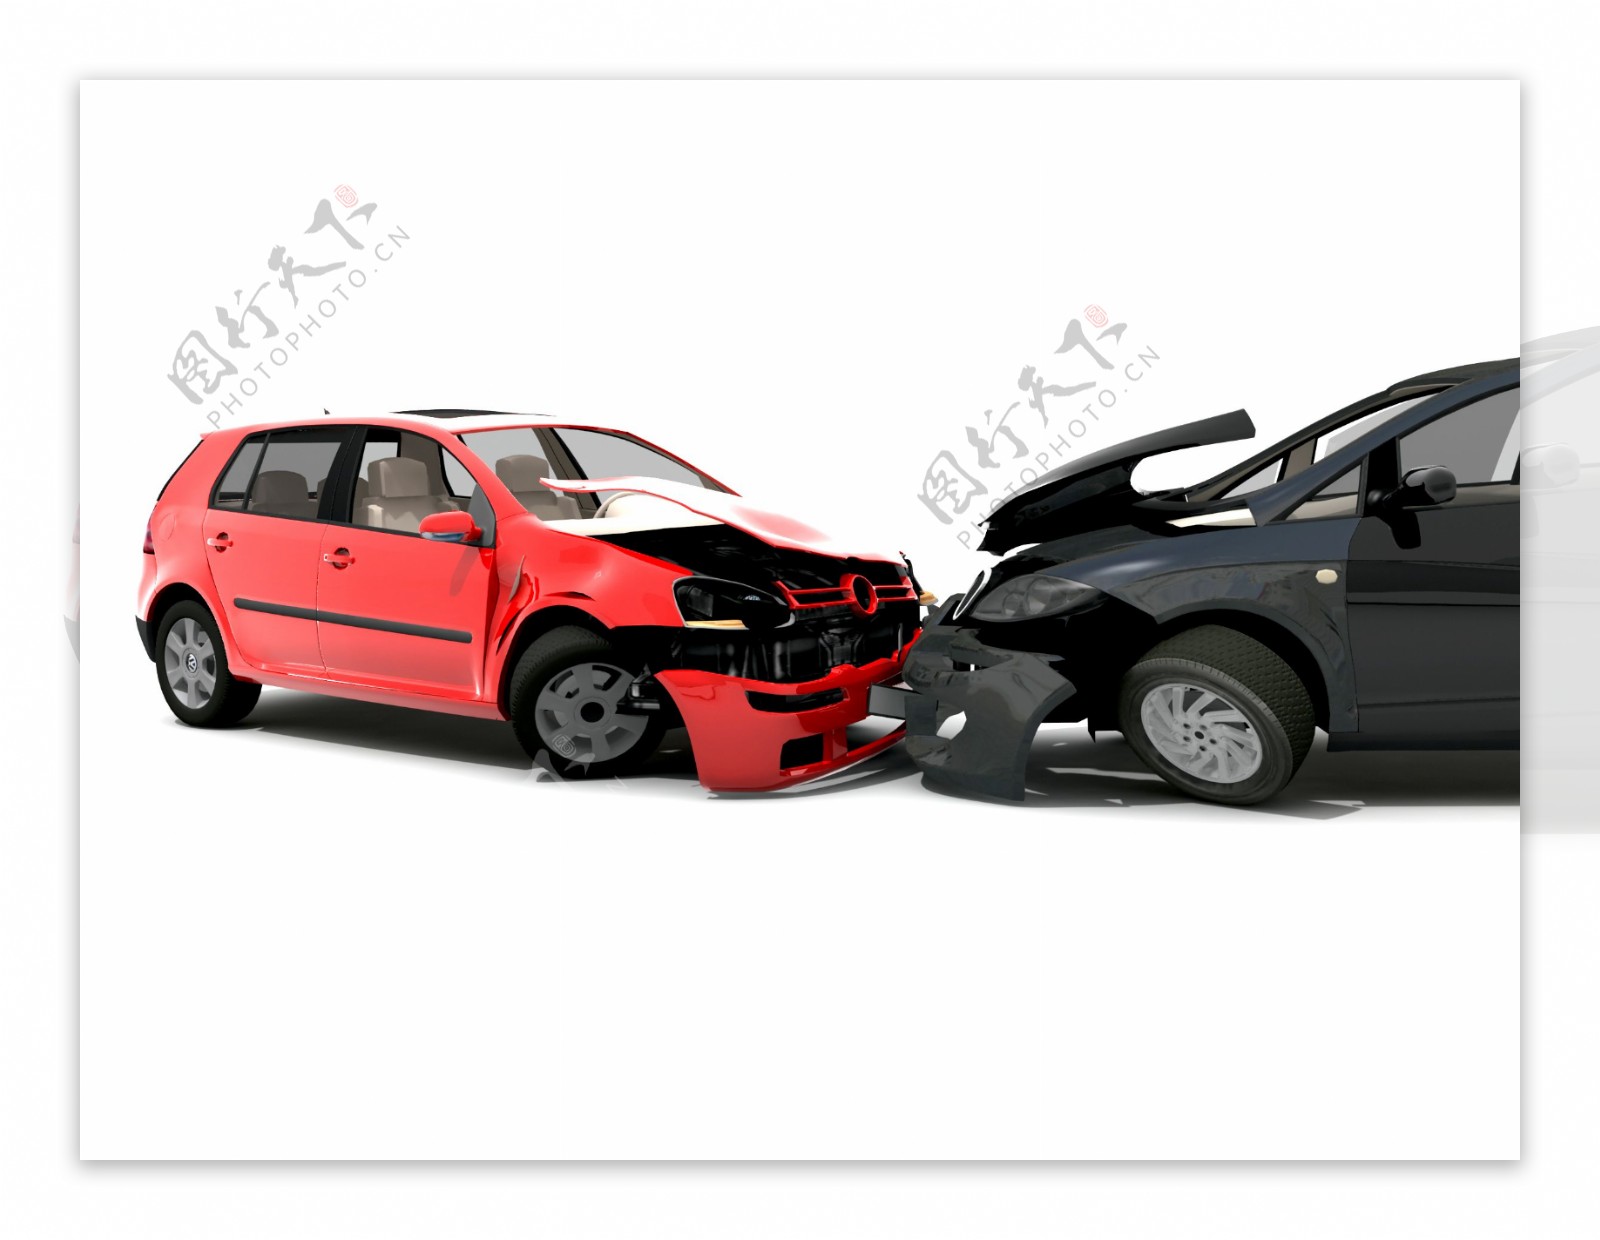 两辆互相撞车的汽车图片